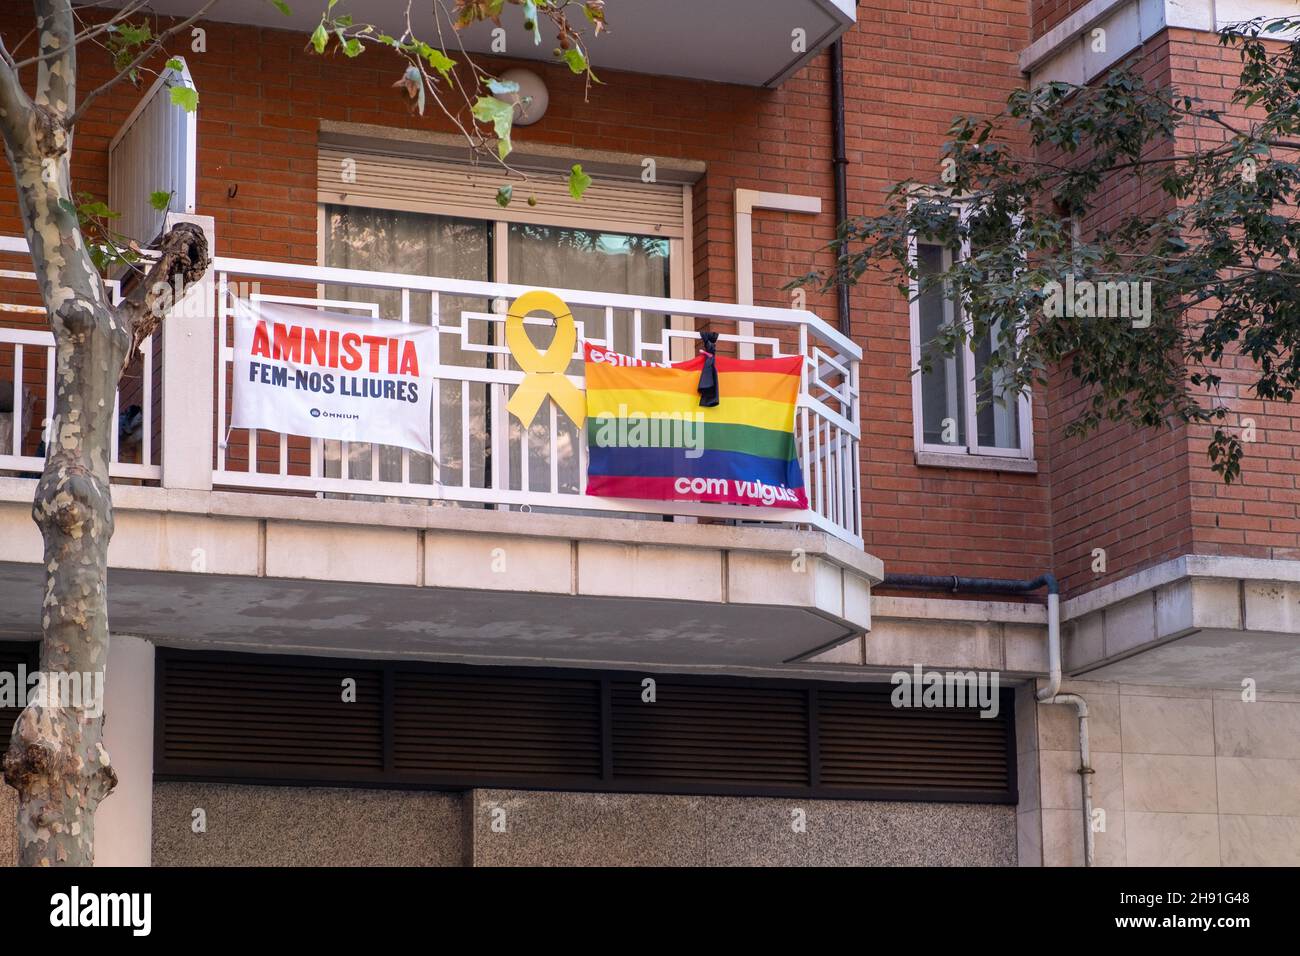 Barcellona, Spagna - 5 novembre 2021: Amnistia fem-nos lliures e LGBTQ bandiere, editoriale illustrativo. Foto Stock